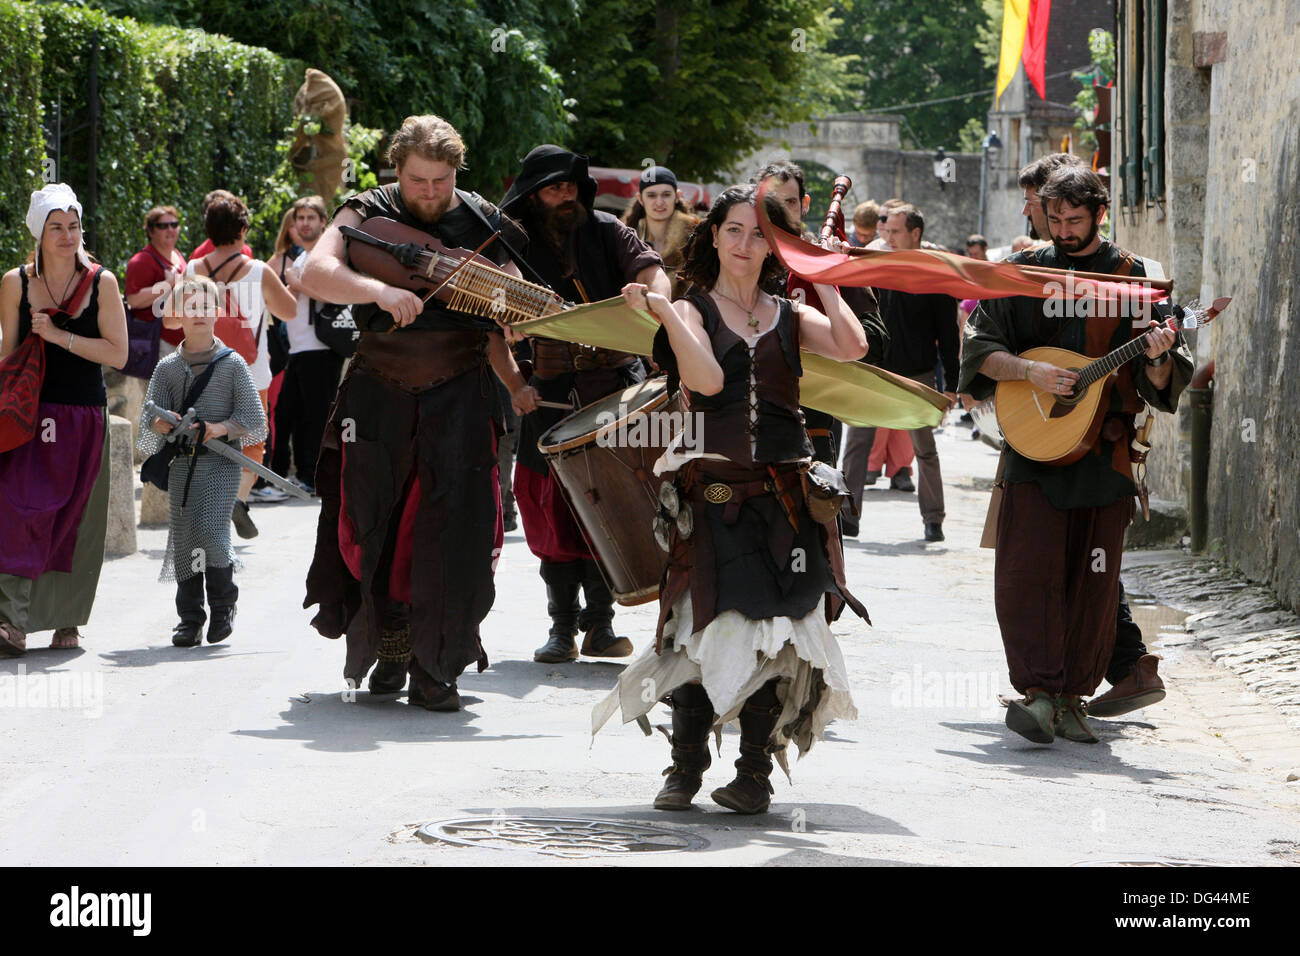 Les acrobates dans la Parade de costumes au cours de la fête médiévale de Provins, classée au Patrimoine Mondial de l'UNESCO, Seine-et-Marne, France Banque D'Images